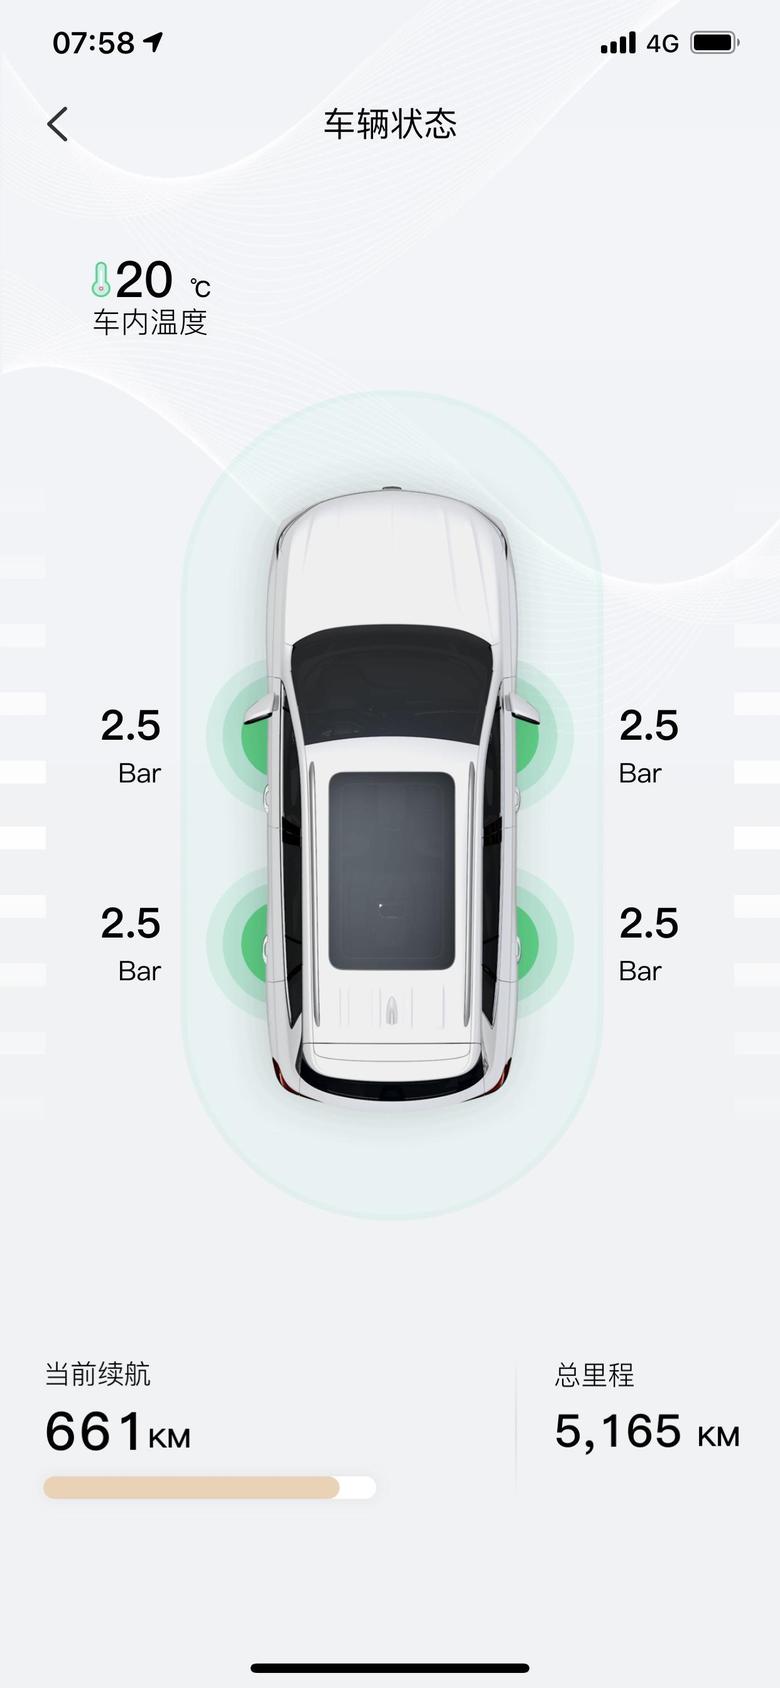 荣威rx5 max是app版本更新的缘故吗？前段时间天窗没关app车辆状态上有显示，现在没有显示了，只有打开app时提示今天有雨请关闭车窗，兄弟们试试你的们的车也这样吗？